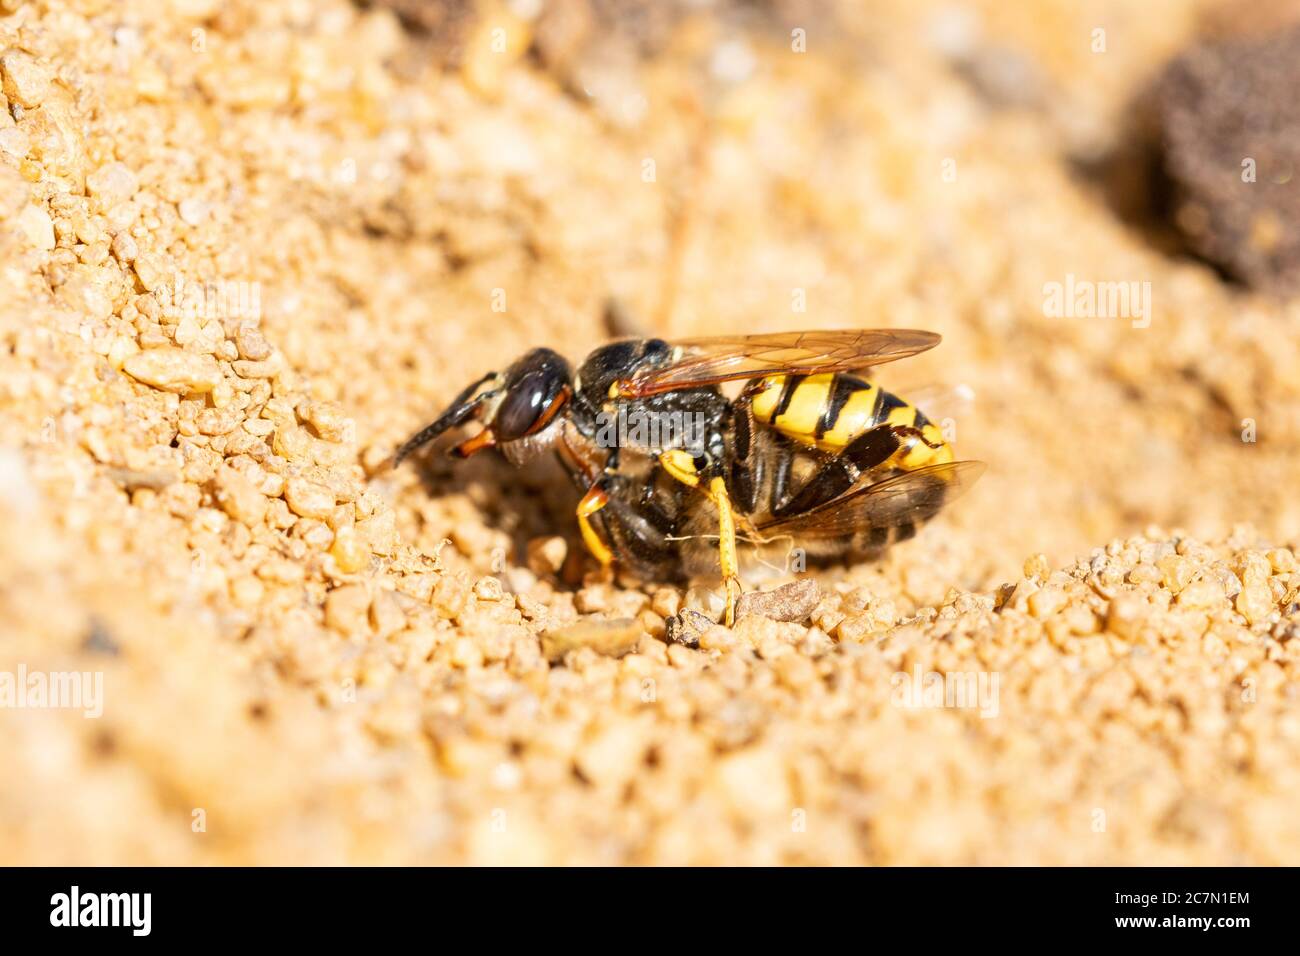 Europäischer Bienenwolf (Philanthus triangulum), eine Bienenmörder-Wespe, die Bienenfreute in ihren Nestbau im Sand nimmt, Großbritannien Stockfoto